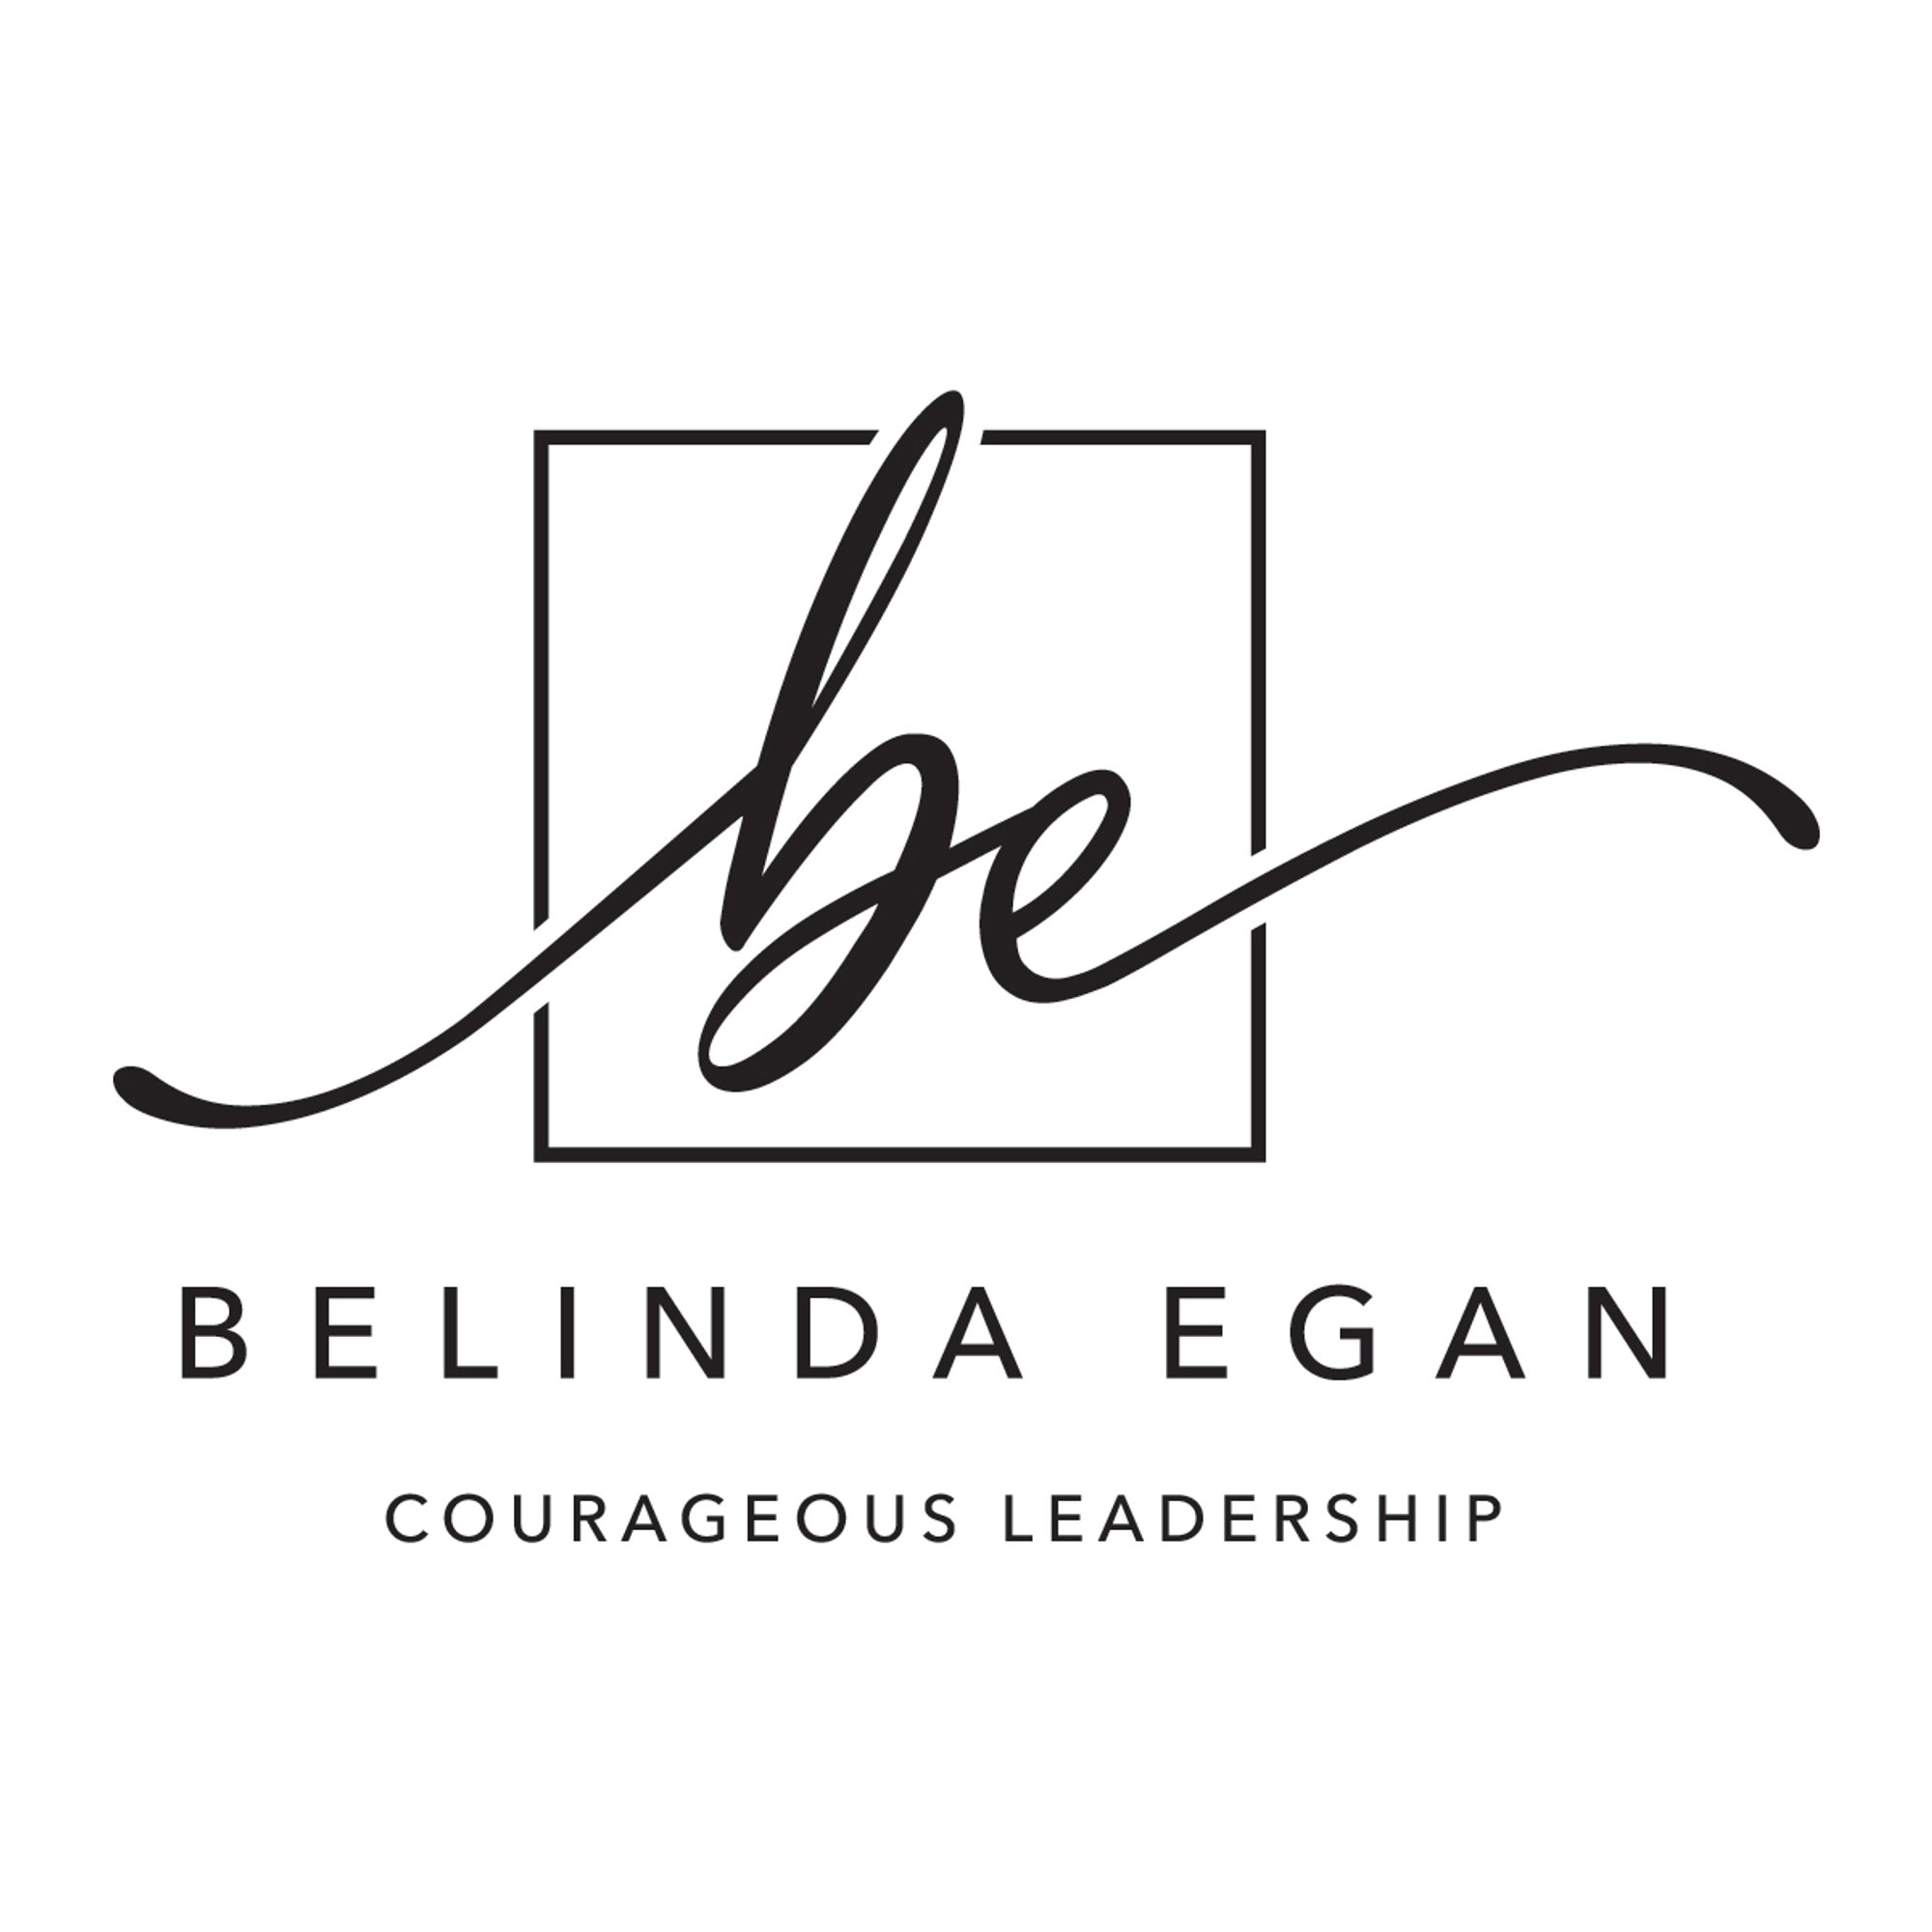 Egan Edge, LLC DBA Belinda Egan